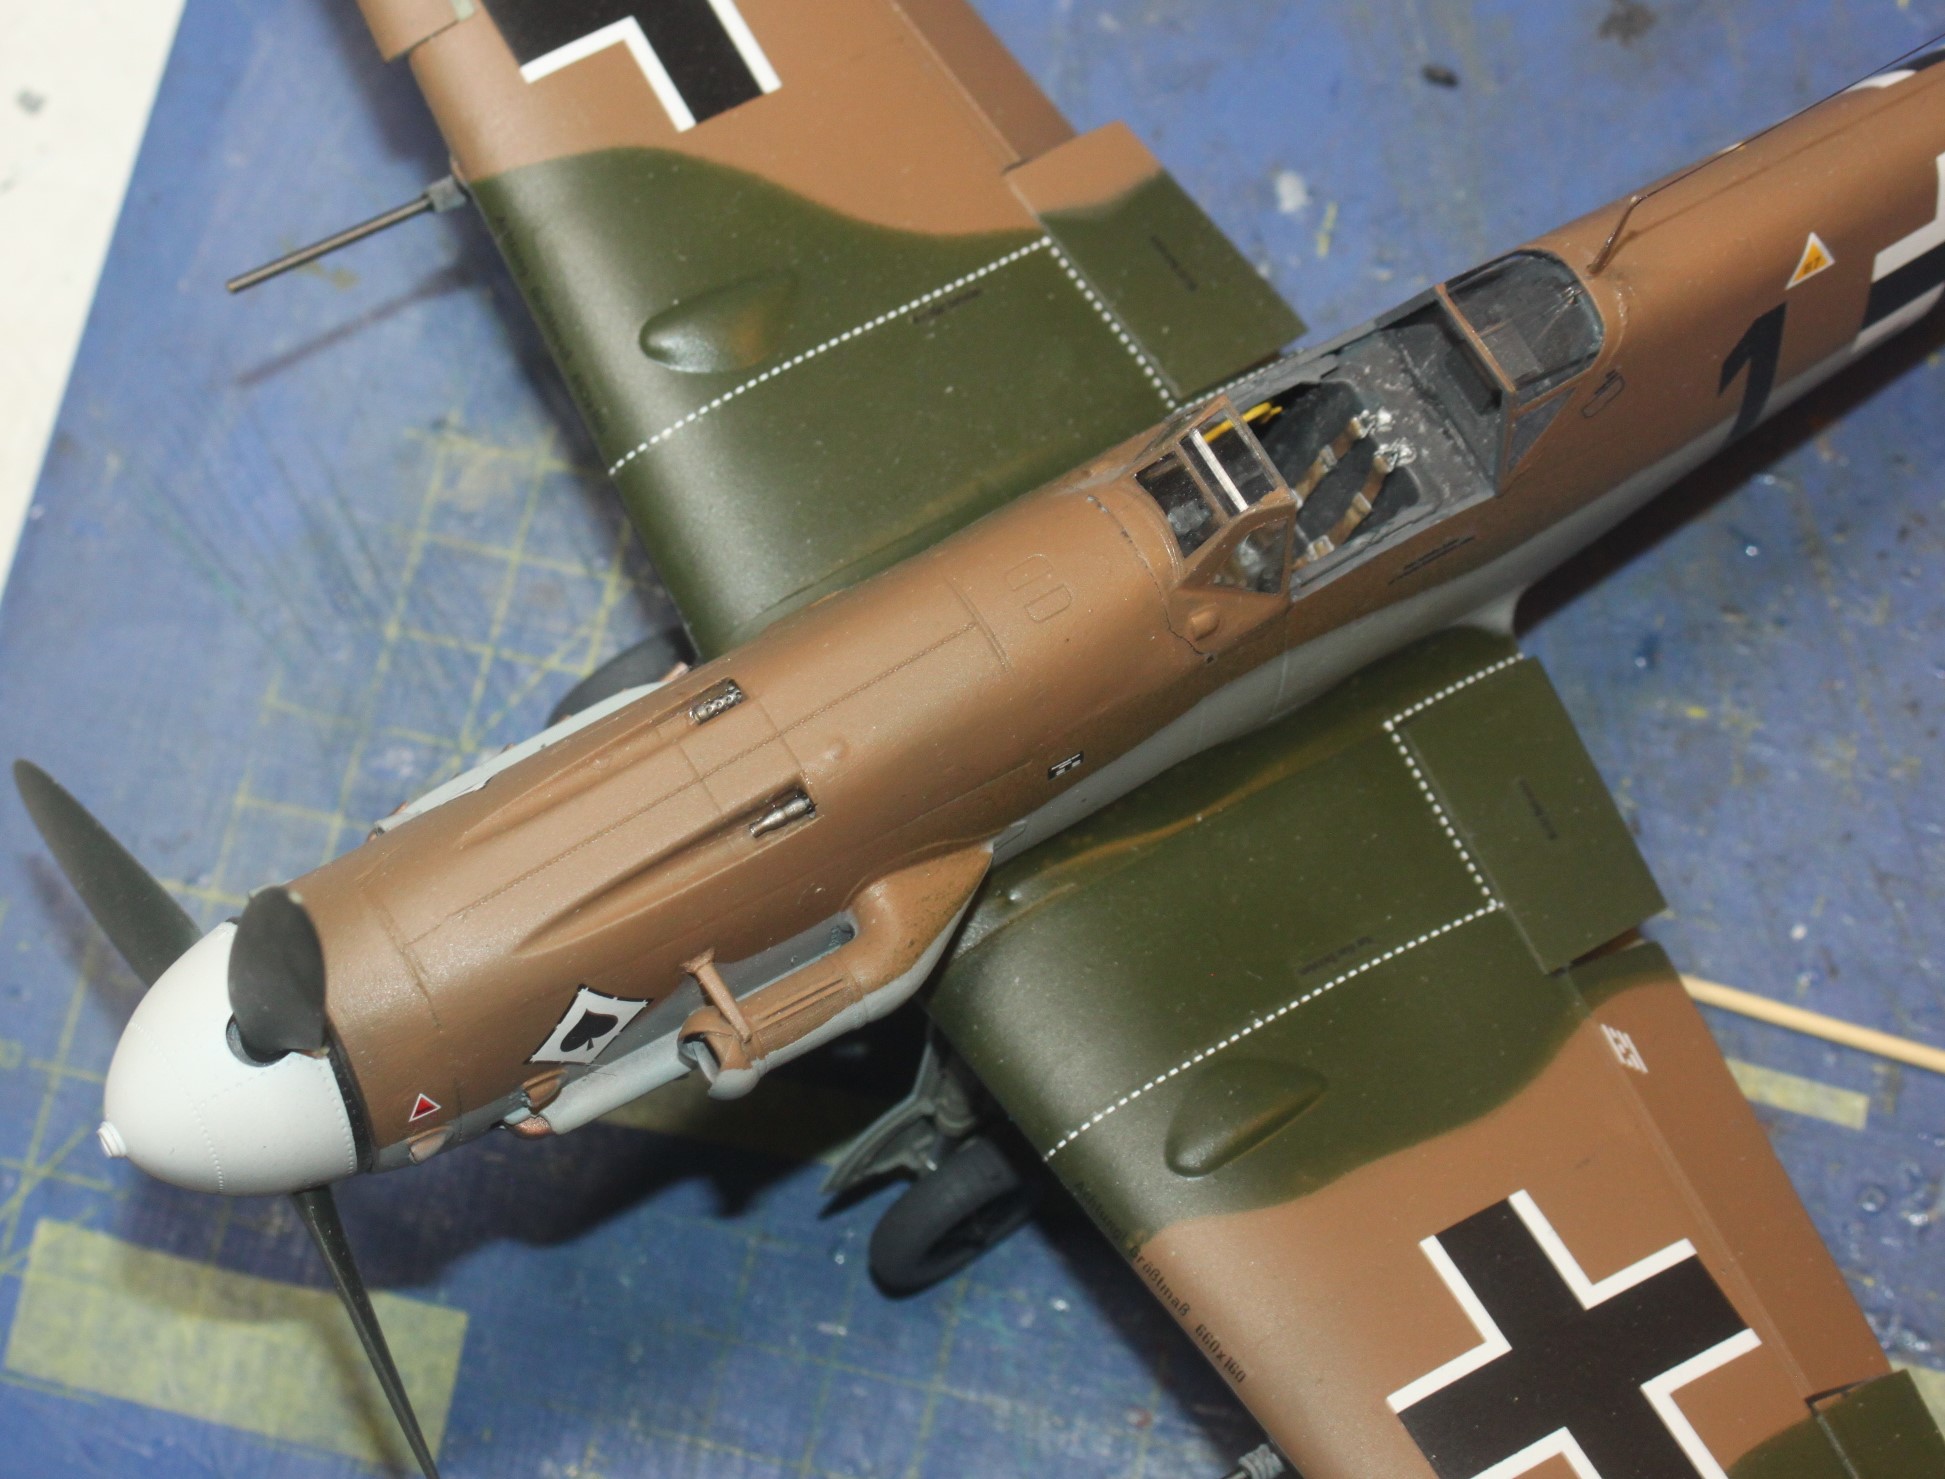 Messerschmitt Bf109G-2, Messerschmitt Bf109G-2, Oblt. Franz Scheiss, 8. JG53 "Pik Ass", Revell 1/32 52508013520_533b14faf1_k